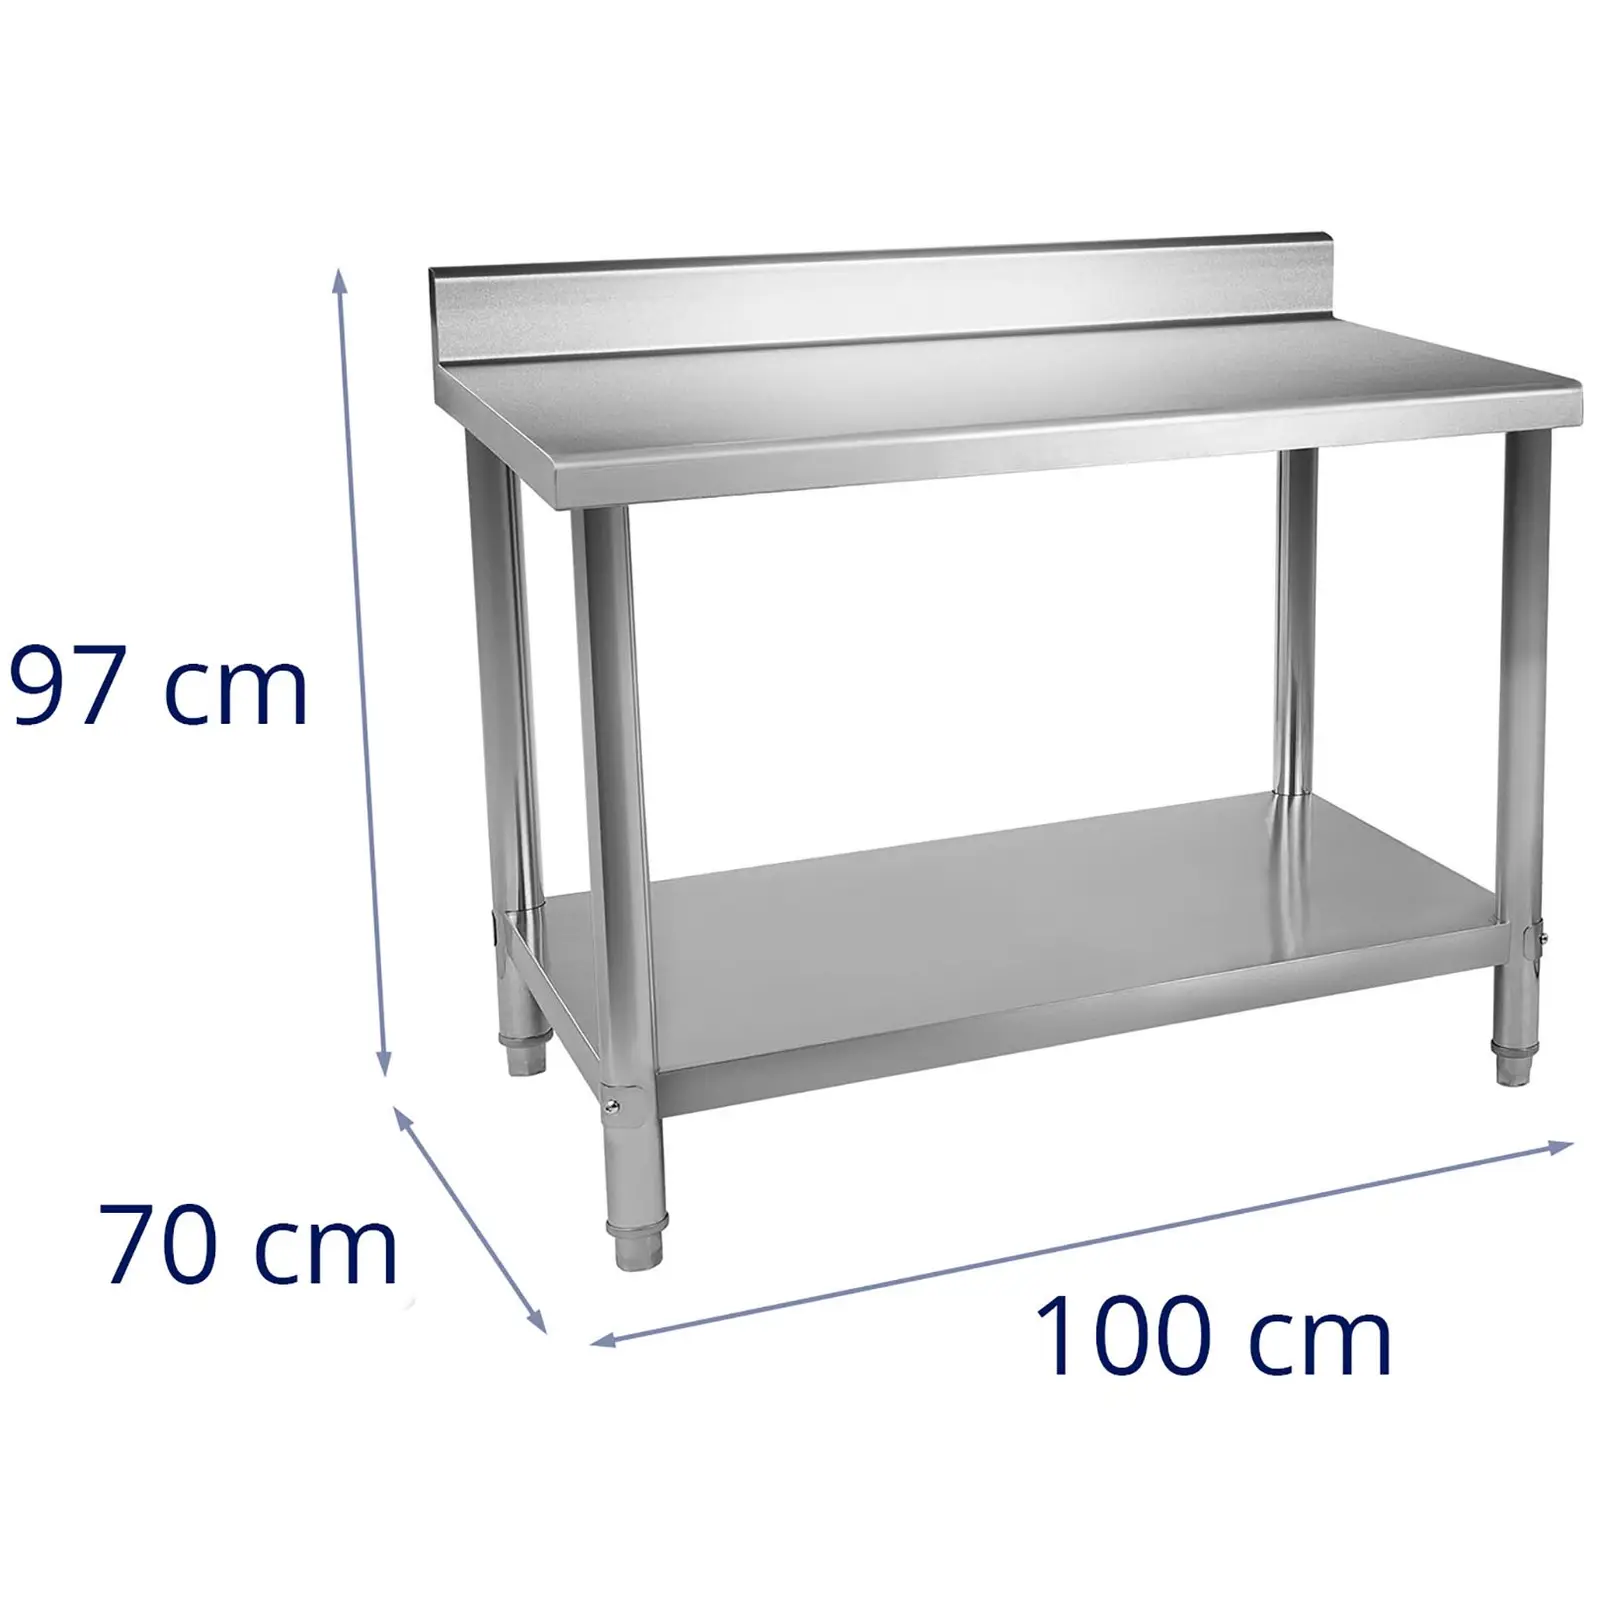 Teräspöytä- RST - 100 x 70 cm - roiskelevy - 95 kg kantavuus